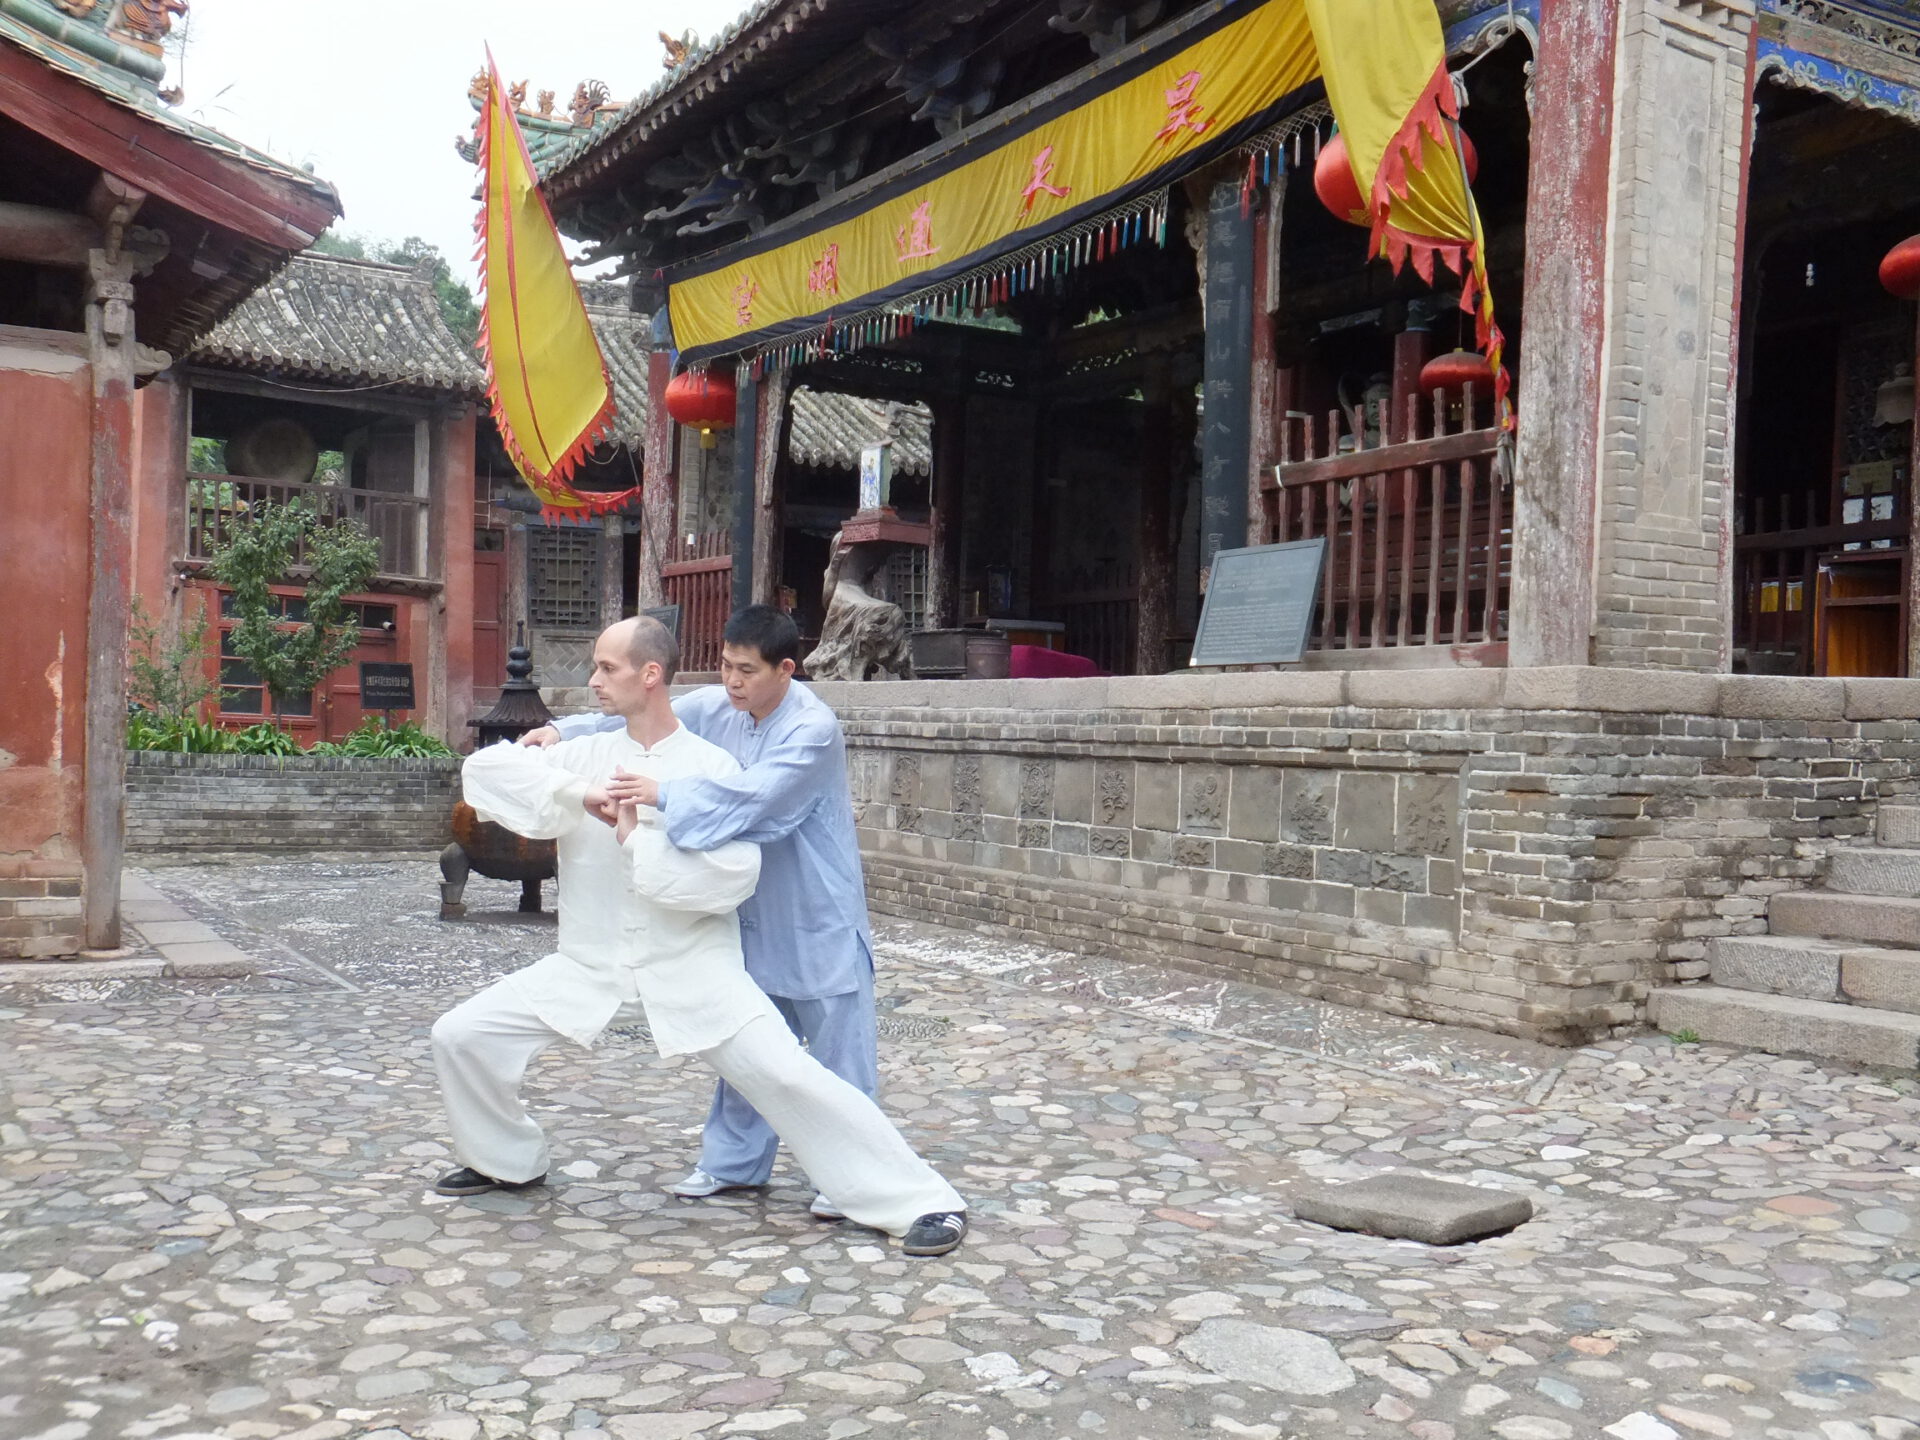 Training in China - Taiji Training im Kloster der Jadequelle mit Großmeister Shen Xijing